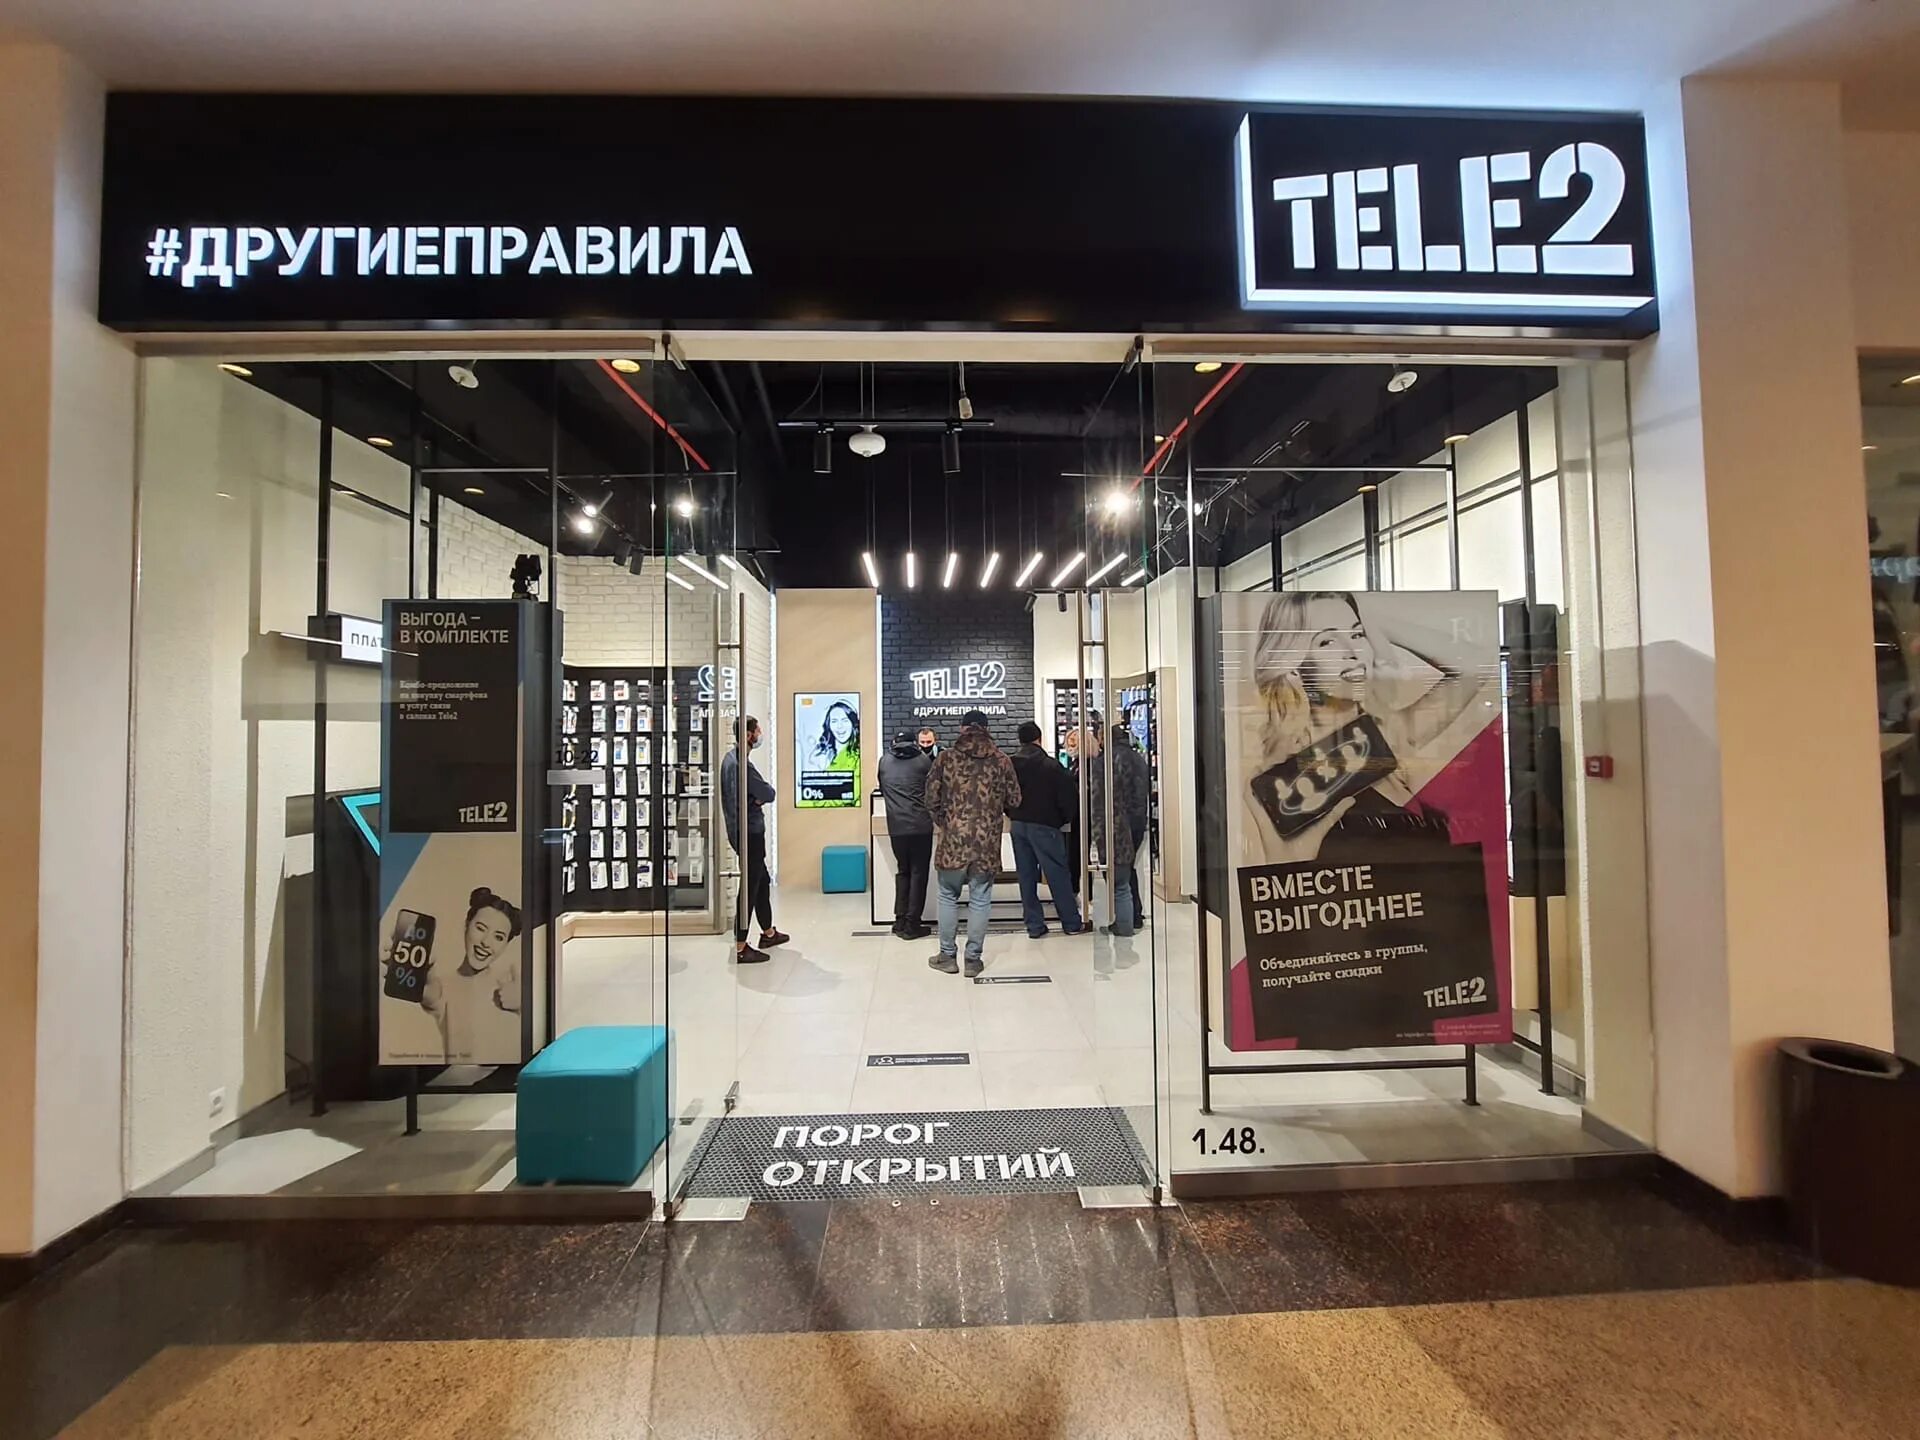 Ближайший салон теле2 от меня. Салон tele2. Салон связи теле2. Новое теле2. Открытие теле2 в Москве.